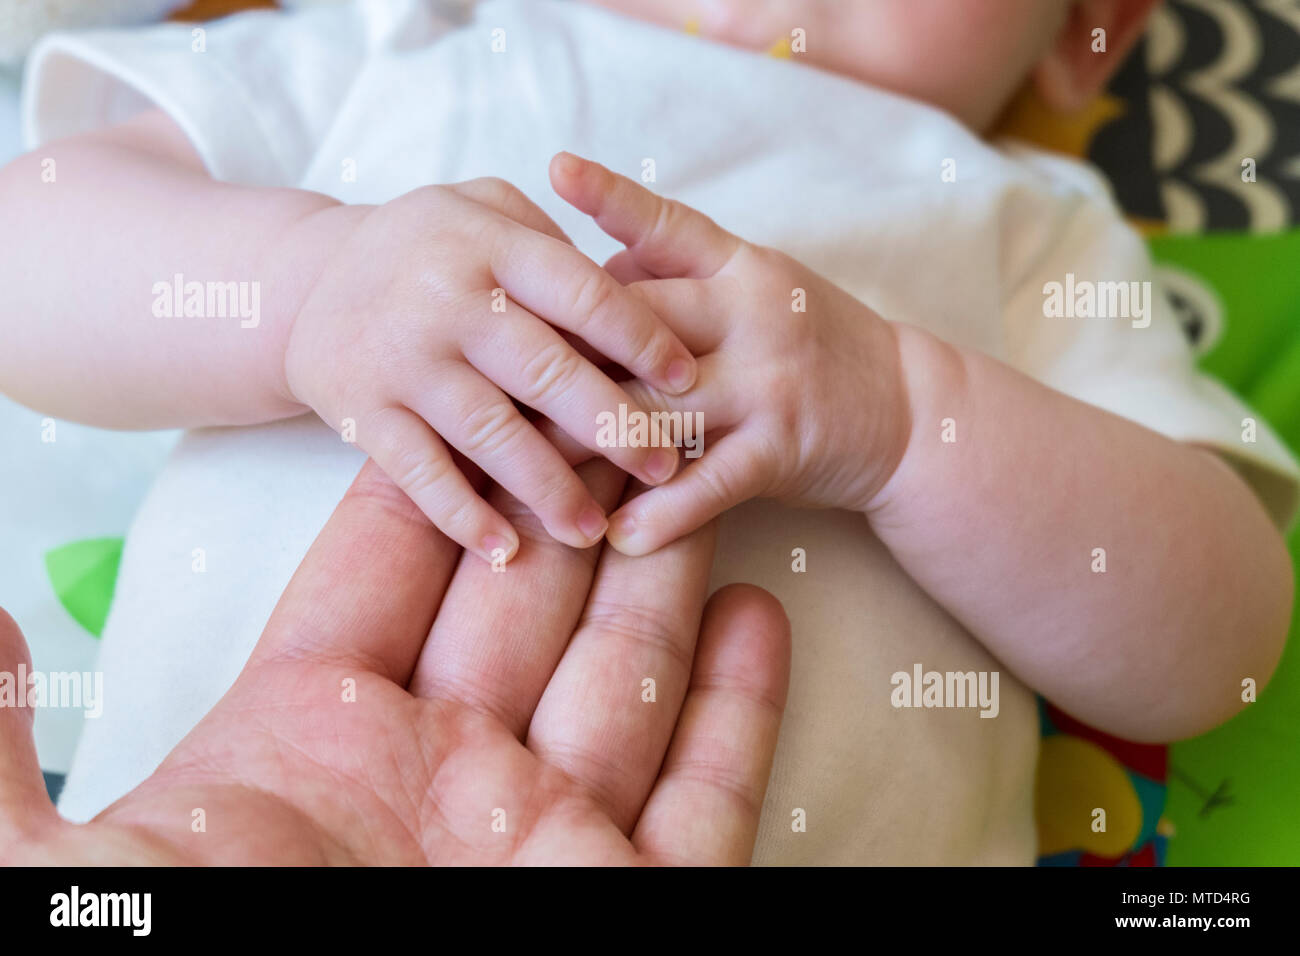 Parent adulte Baby's hand, montrant un lien tactile, de confiance et d'affection, de donner à l'enfant un sentiment de confort, de sécurité et de proximité Banque D'Images